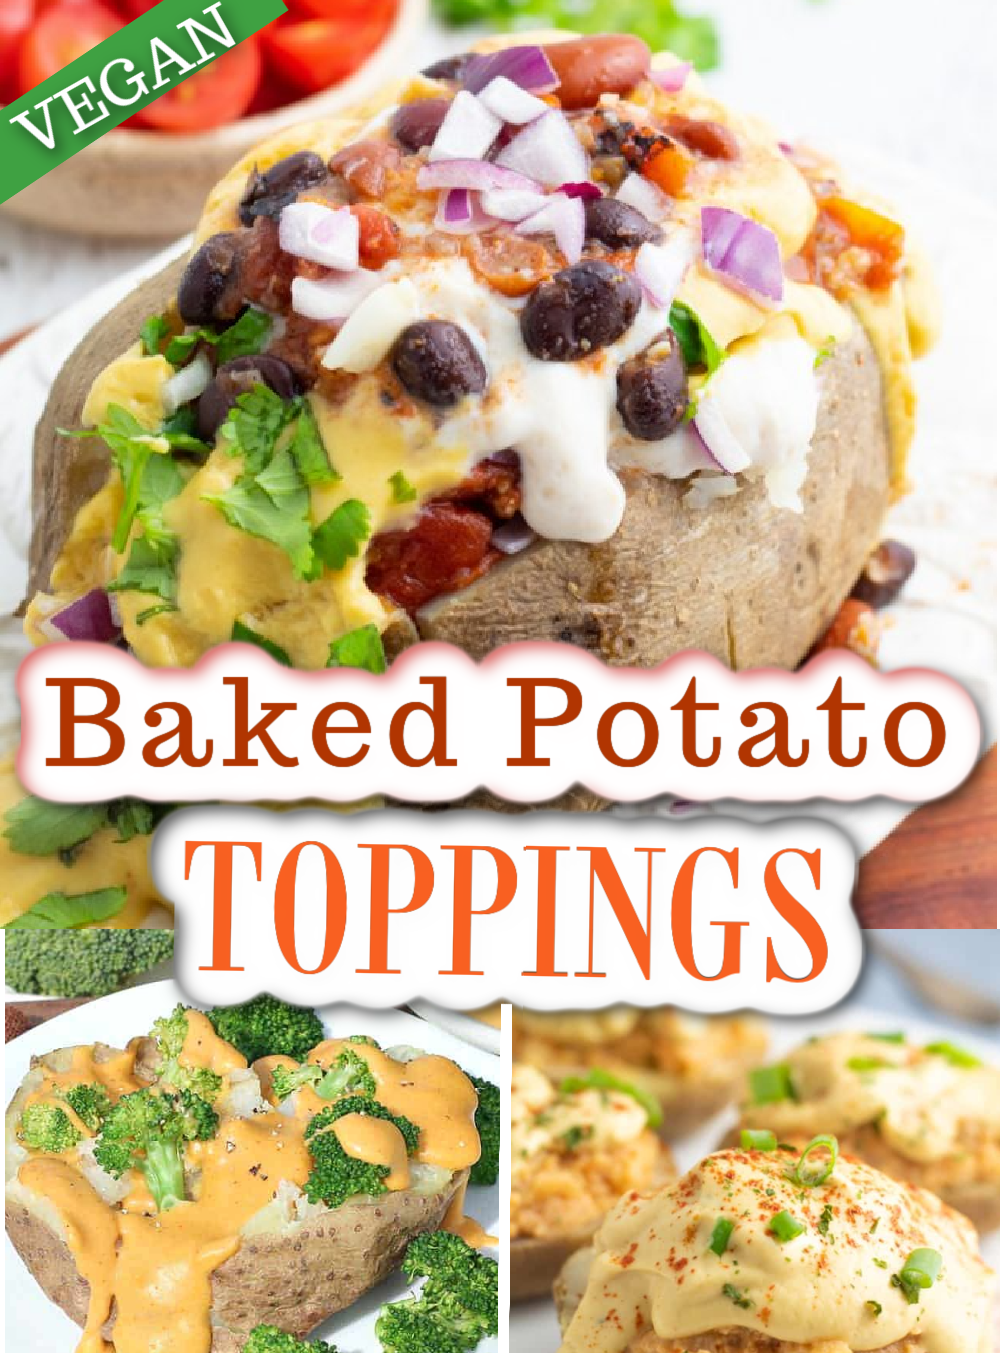 https://eatplant-based.com/wp-content/uploads/2015/02/Baked-Potato-VEGAN-Toppings-SMALL.png